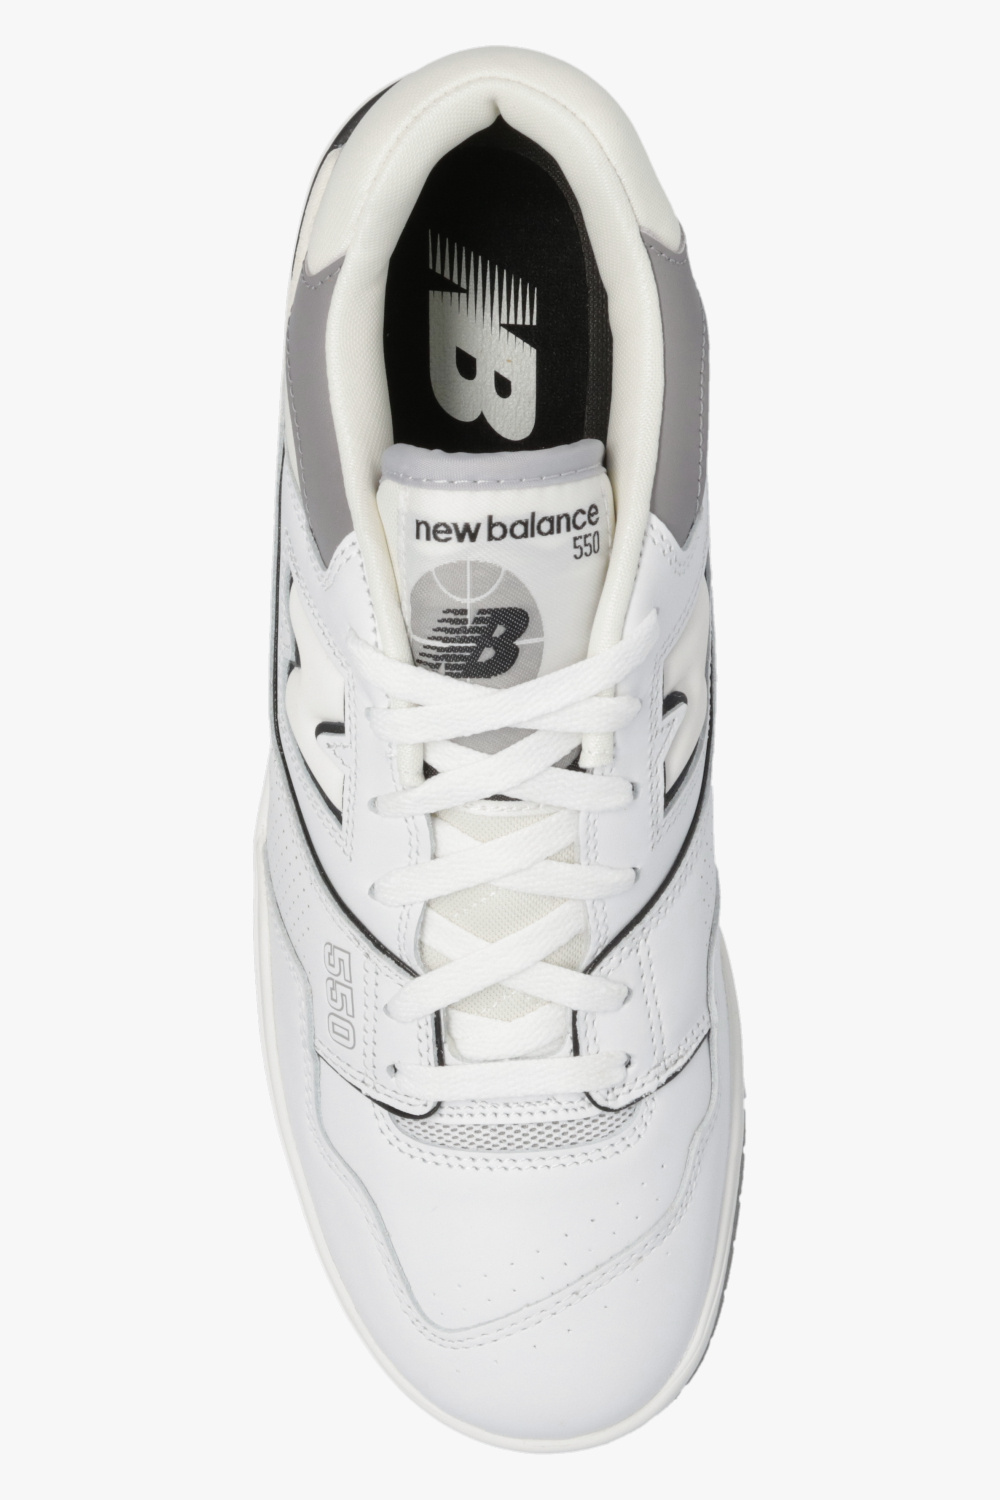 De-iceShops - zapatillas de running New Balance talla 17 azules - White sneakers Balance